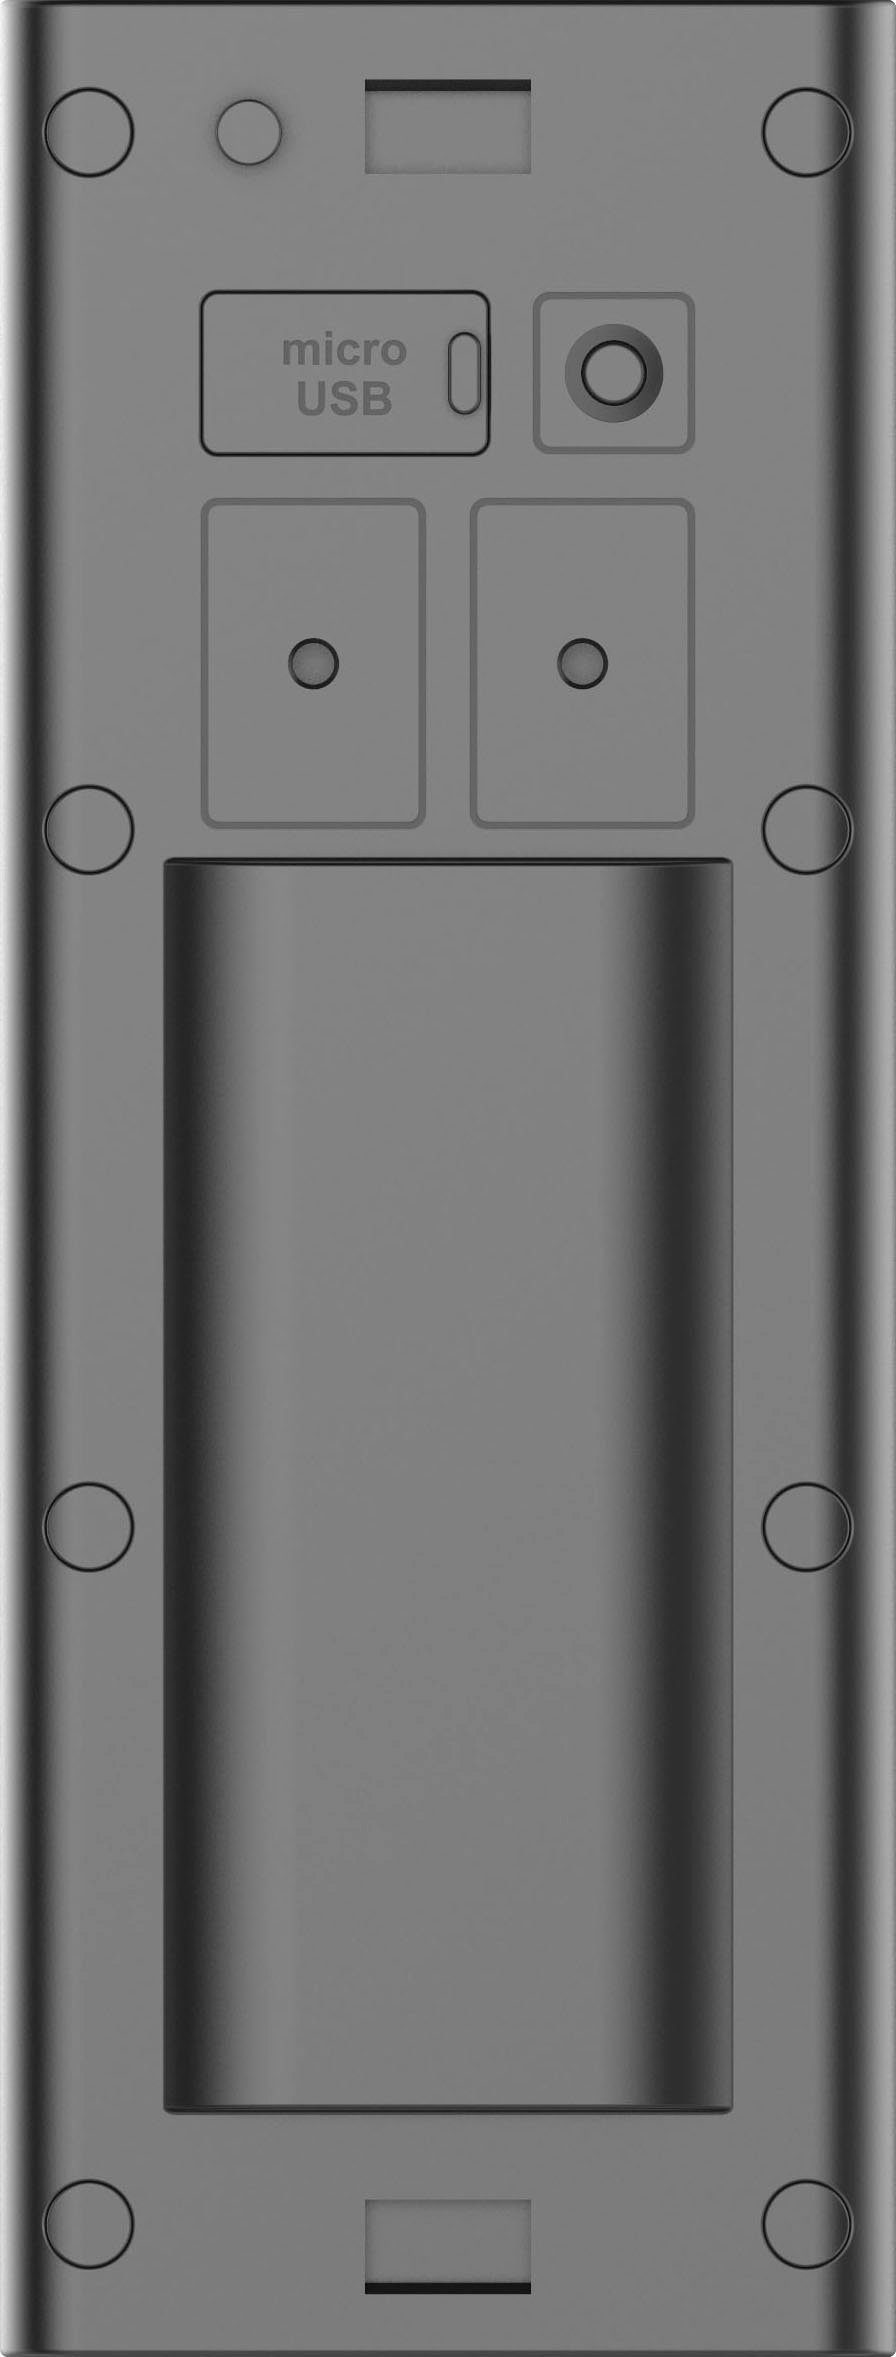 (Außenbereich) Smart Überwachungskamera Kit DB60 Kamera-Türklingel Imou